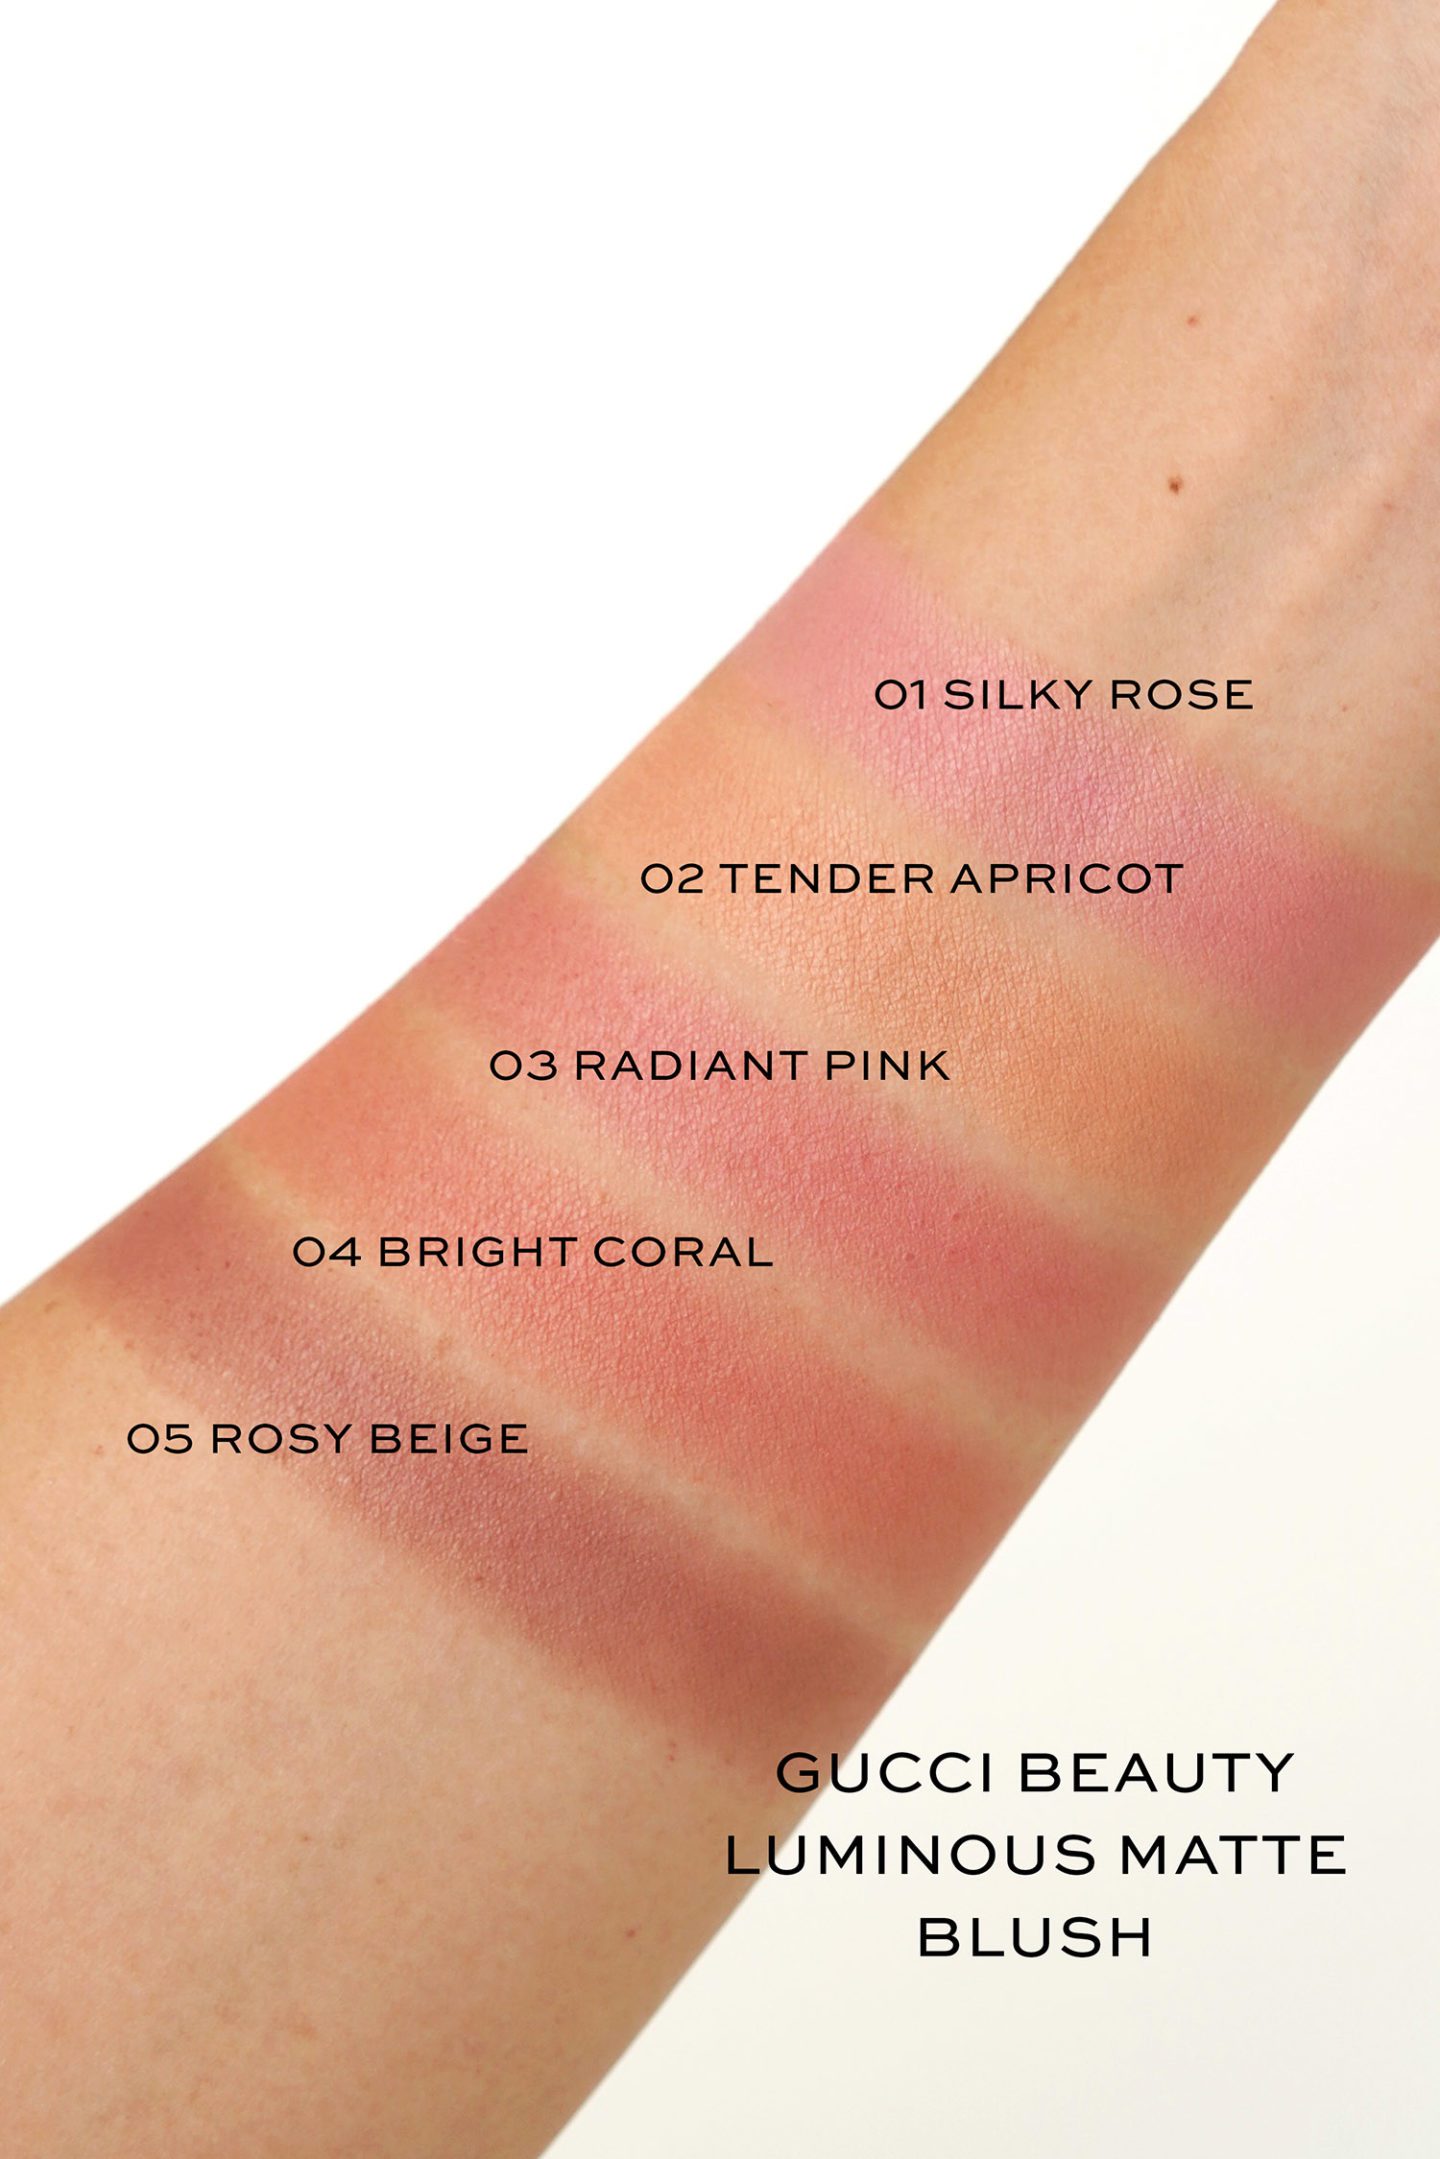 Gucci Beauty Luminous Matte Beauty Blush swatches